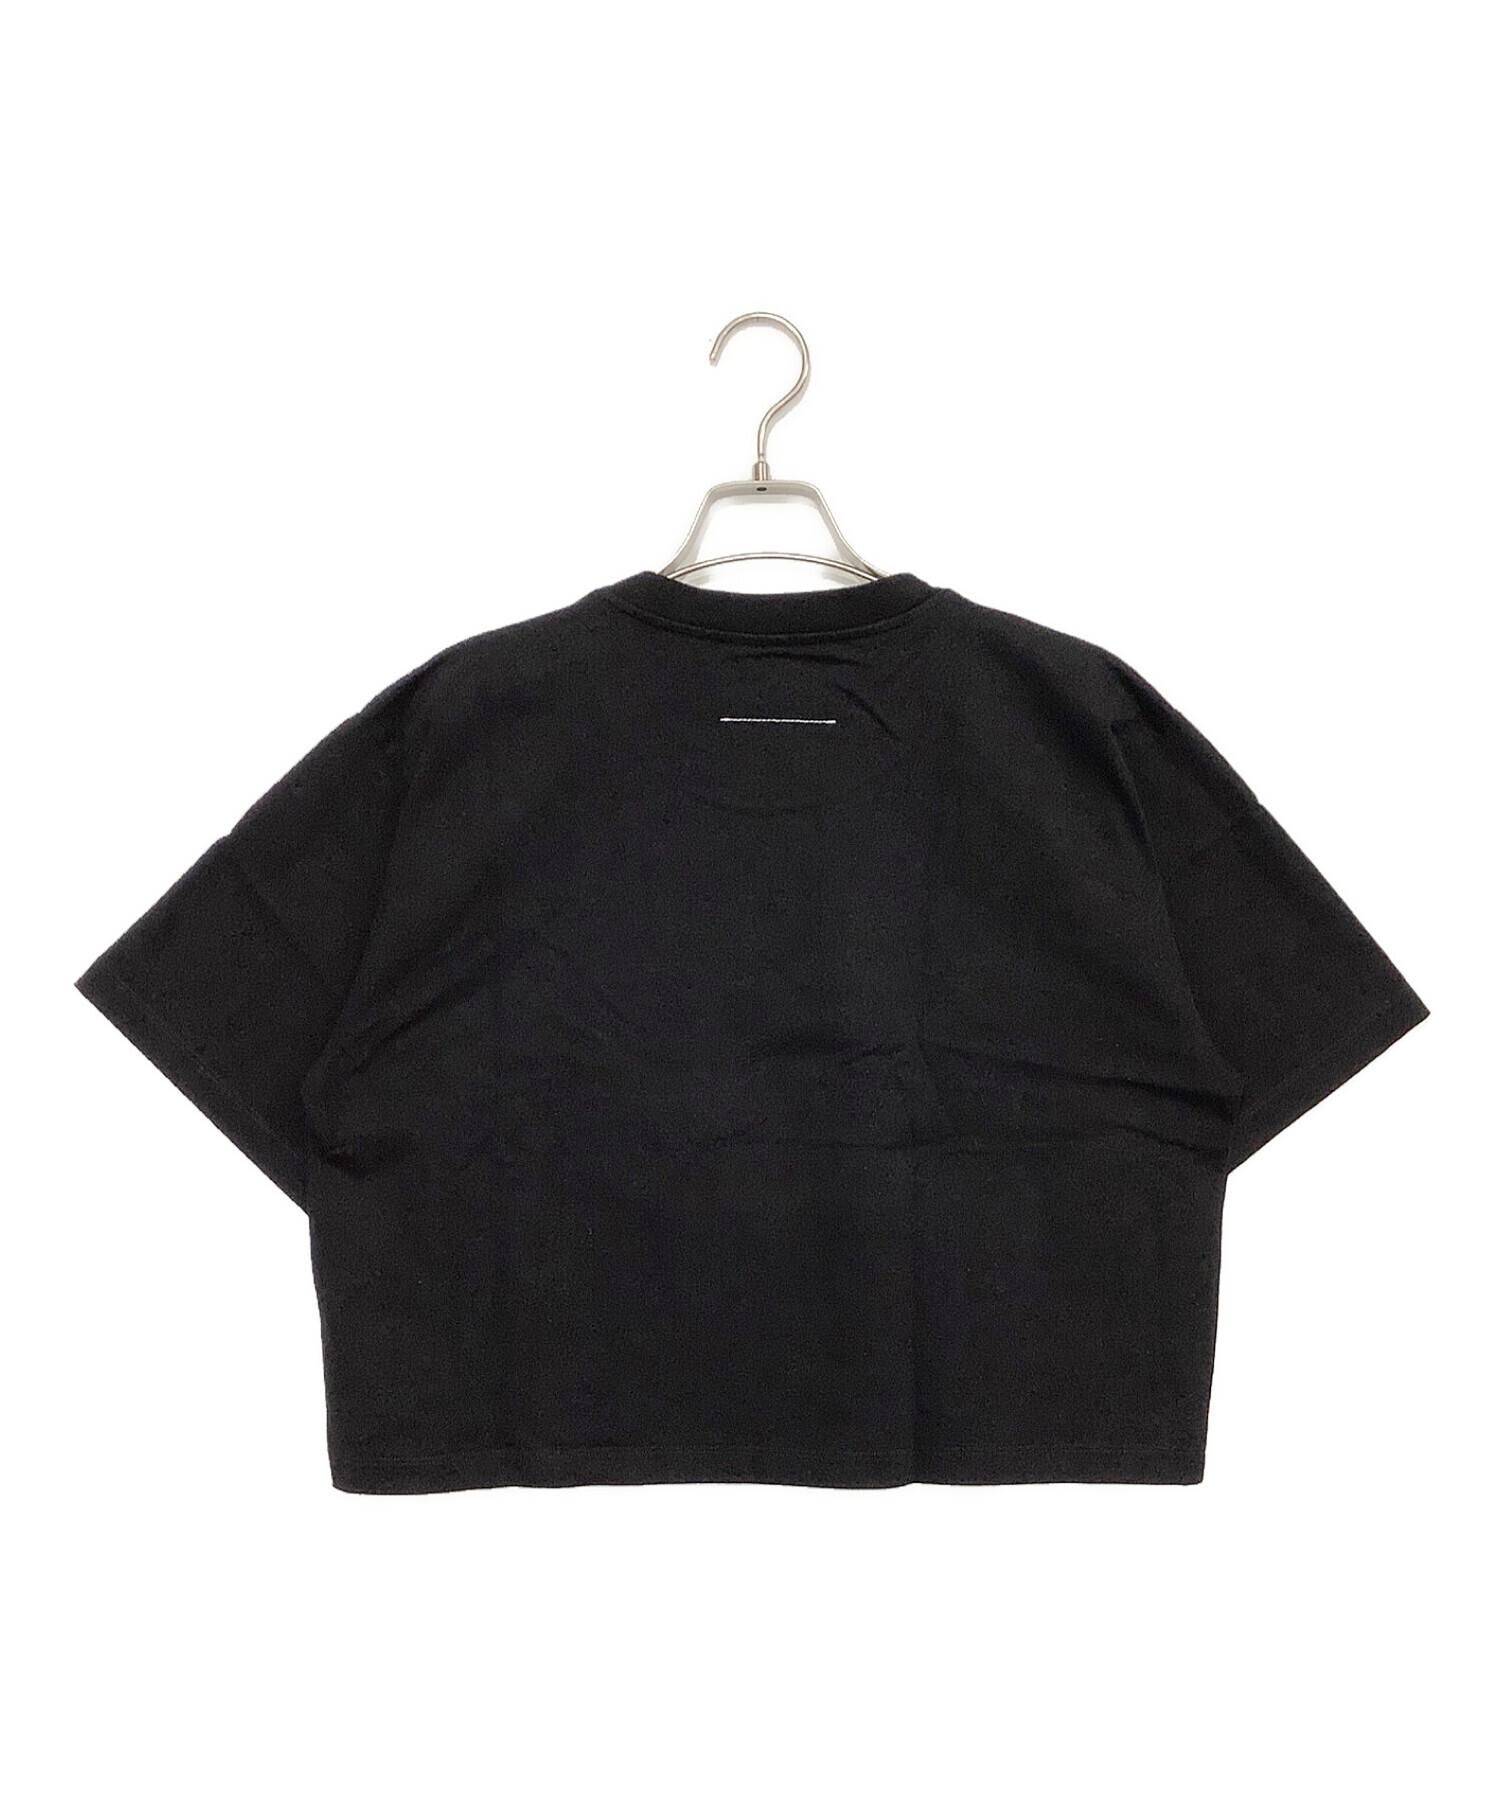 MM6 Maison Margiela (エムエムシックス メゾンマルジェラ) クロップド丈プリントTシャツ ブラック サイズ:S